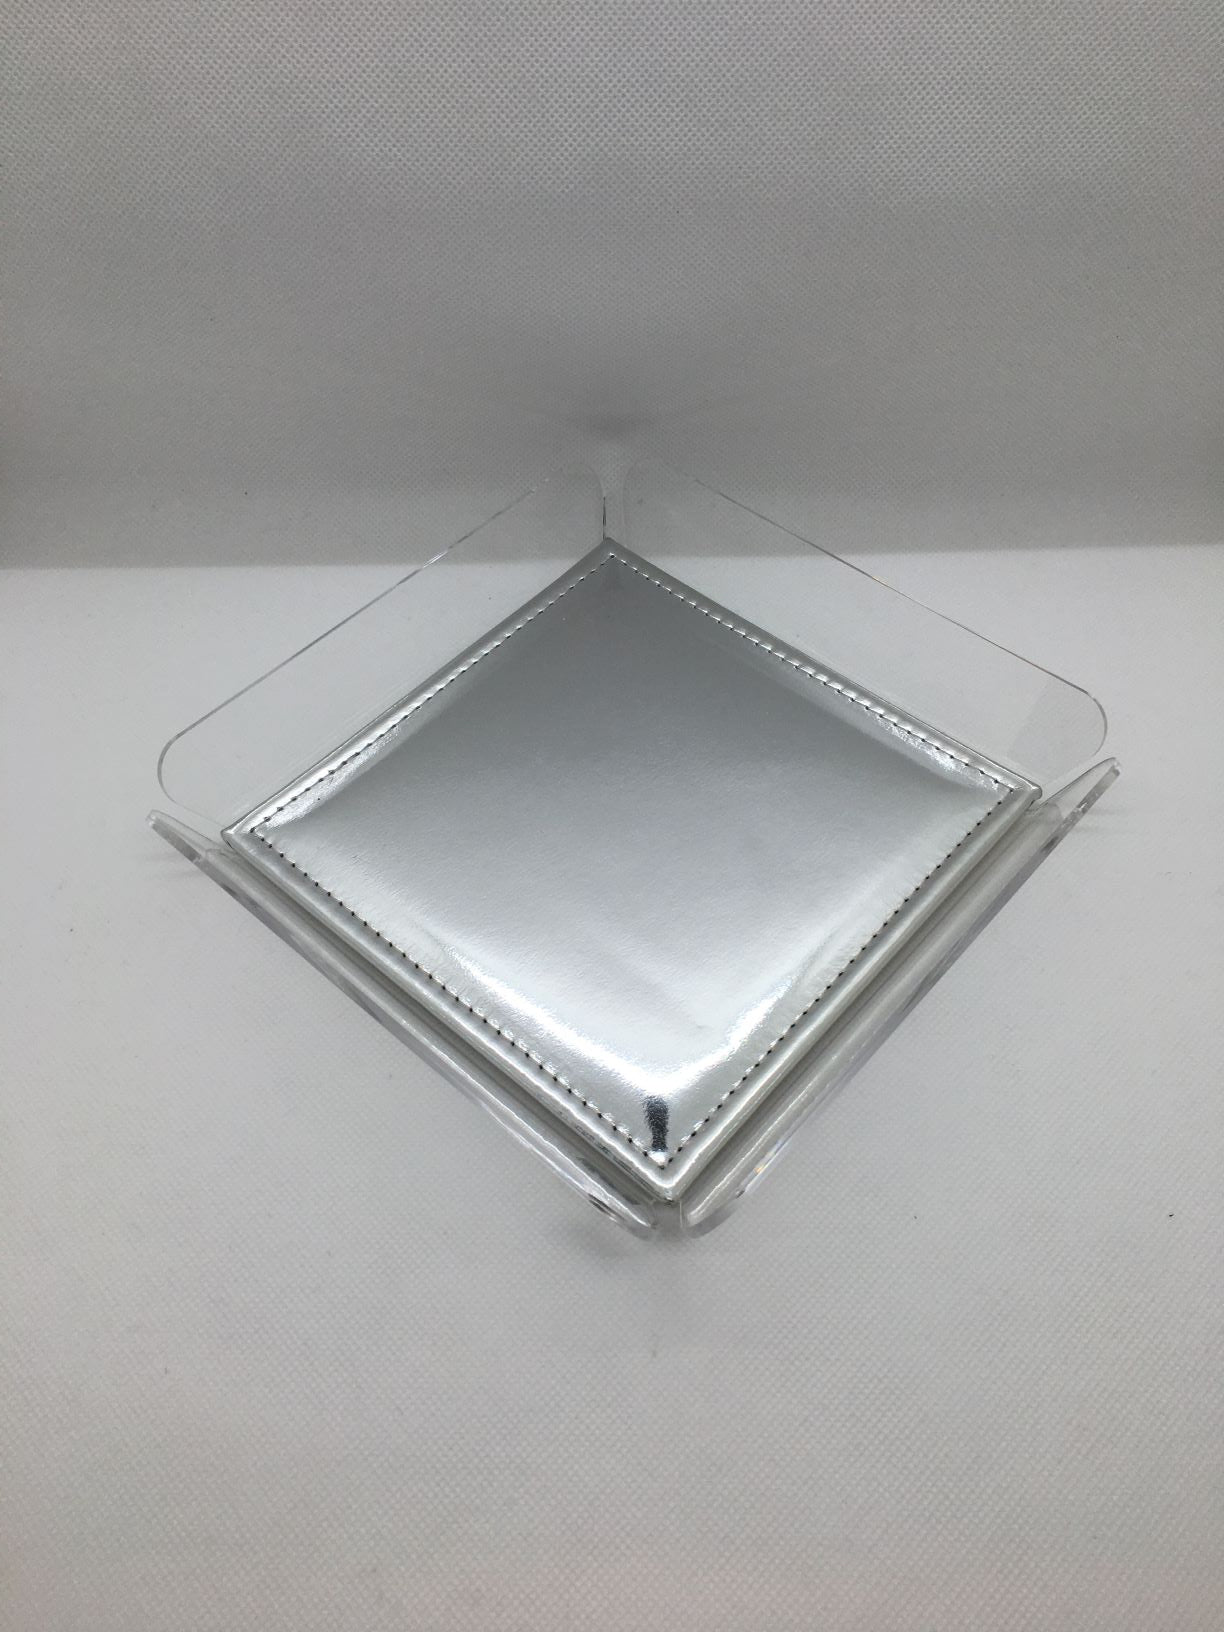 ANYTHING Vuotatasche in cristallo acrilico trasparente con cuscinetto argento. Dimensioni cm 18x18x3 h. Spessore PMMA mm 3. In negozio e online su tuttochic.it